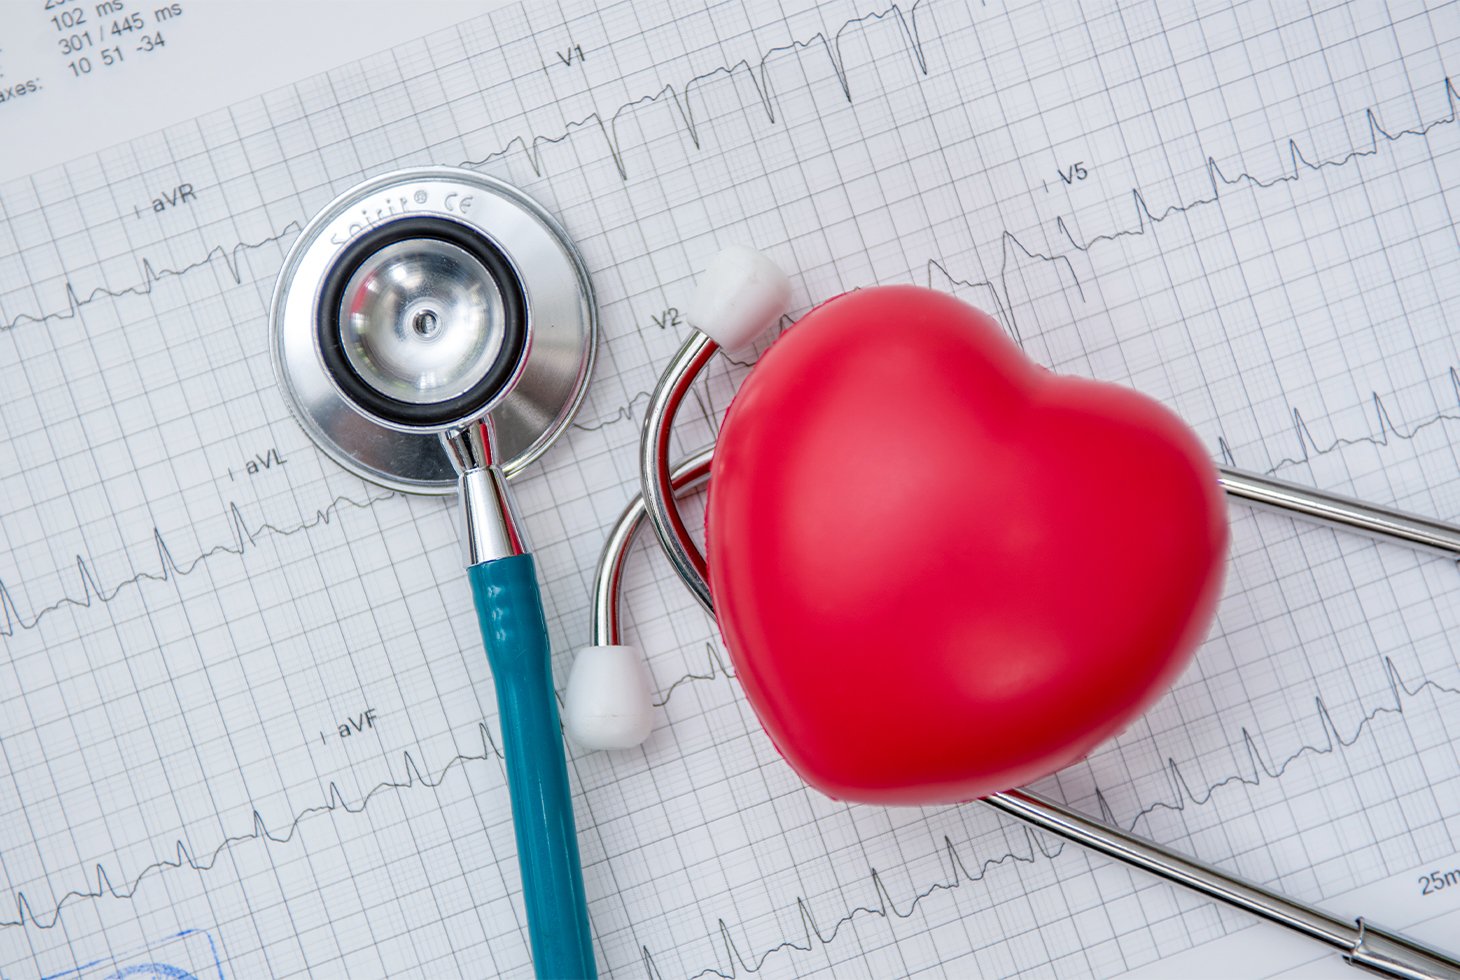 Représentation conceptuelle d’un cœur accompagné d’un stethoscope. Les deux objets sont posés sur une feuille de papier millimétré présentant les résultats d’un ECG.